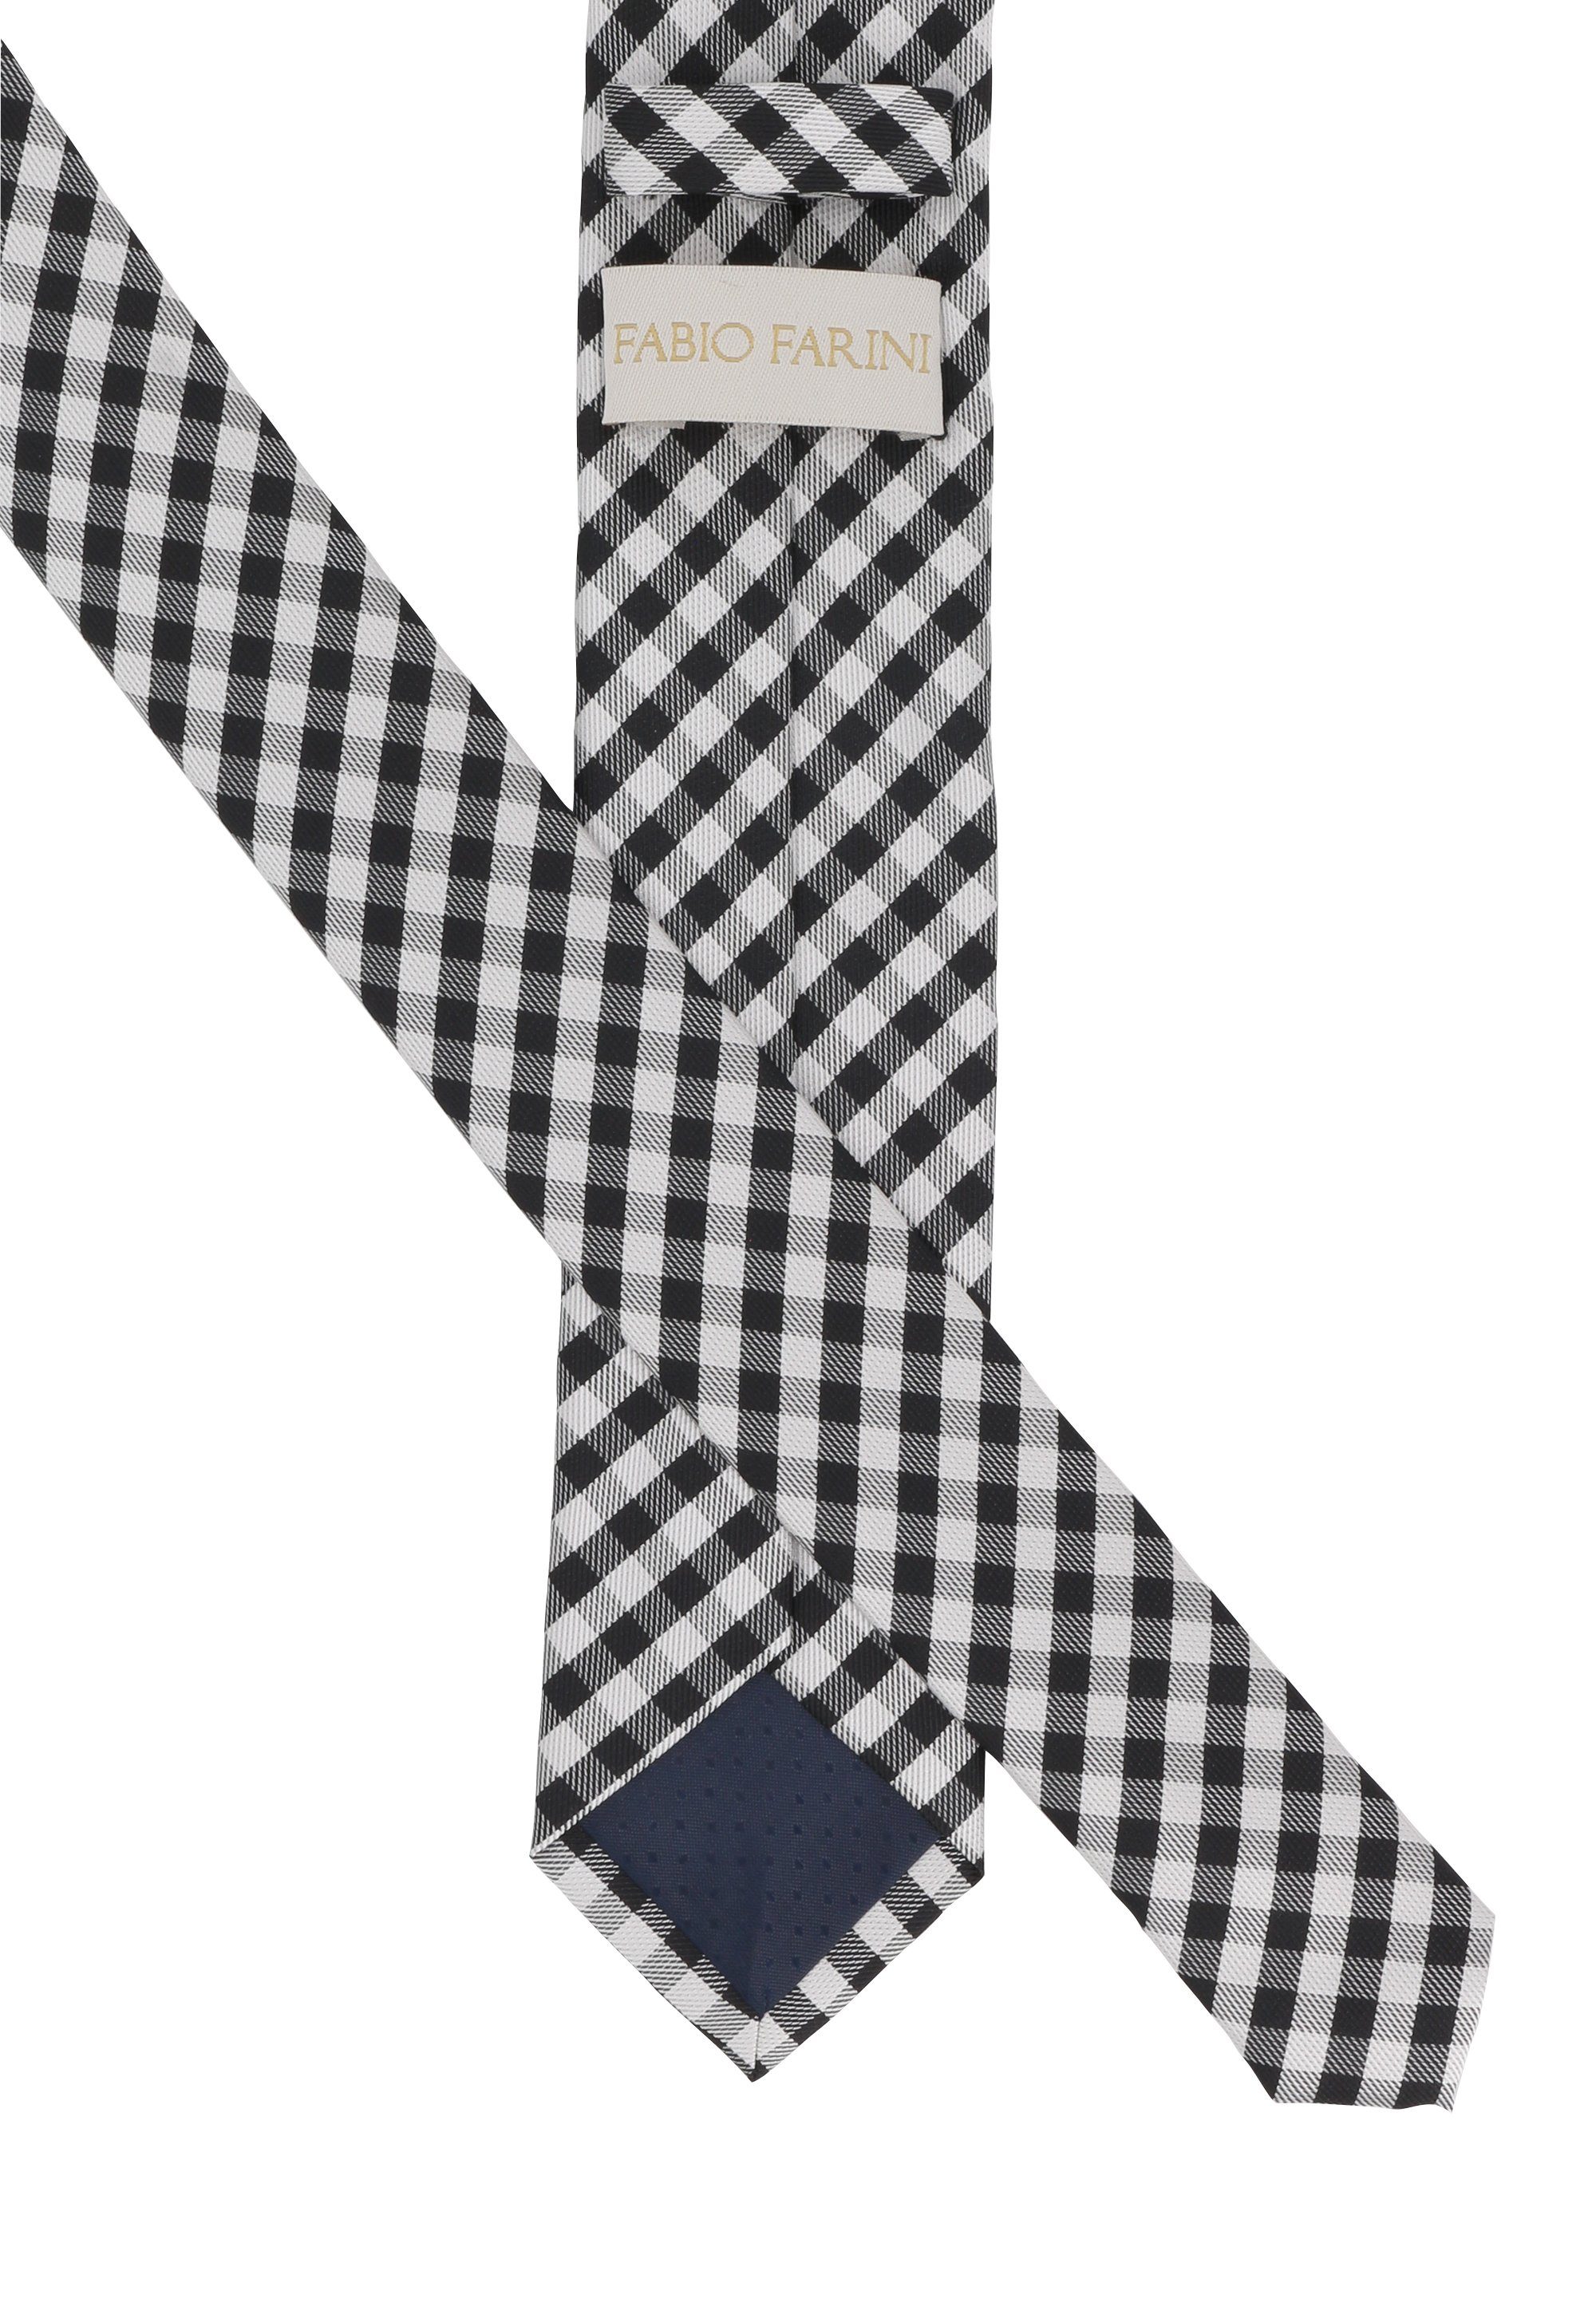 - oder Schmal Krawatte (ohne (6cm), Breite Schlips 6cm Farini Fabio karierte 8cm Herren Box, in Schwarz/Schneeweiß Kariert) Krawatte